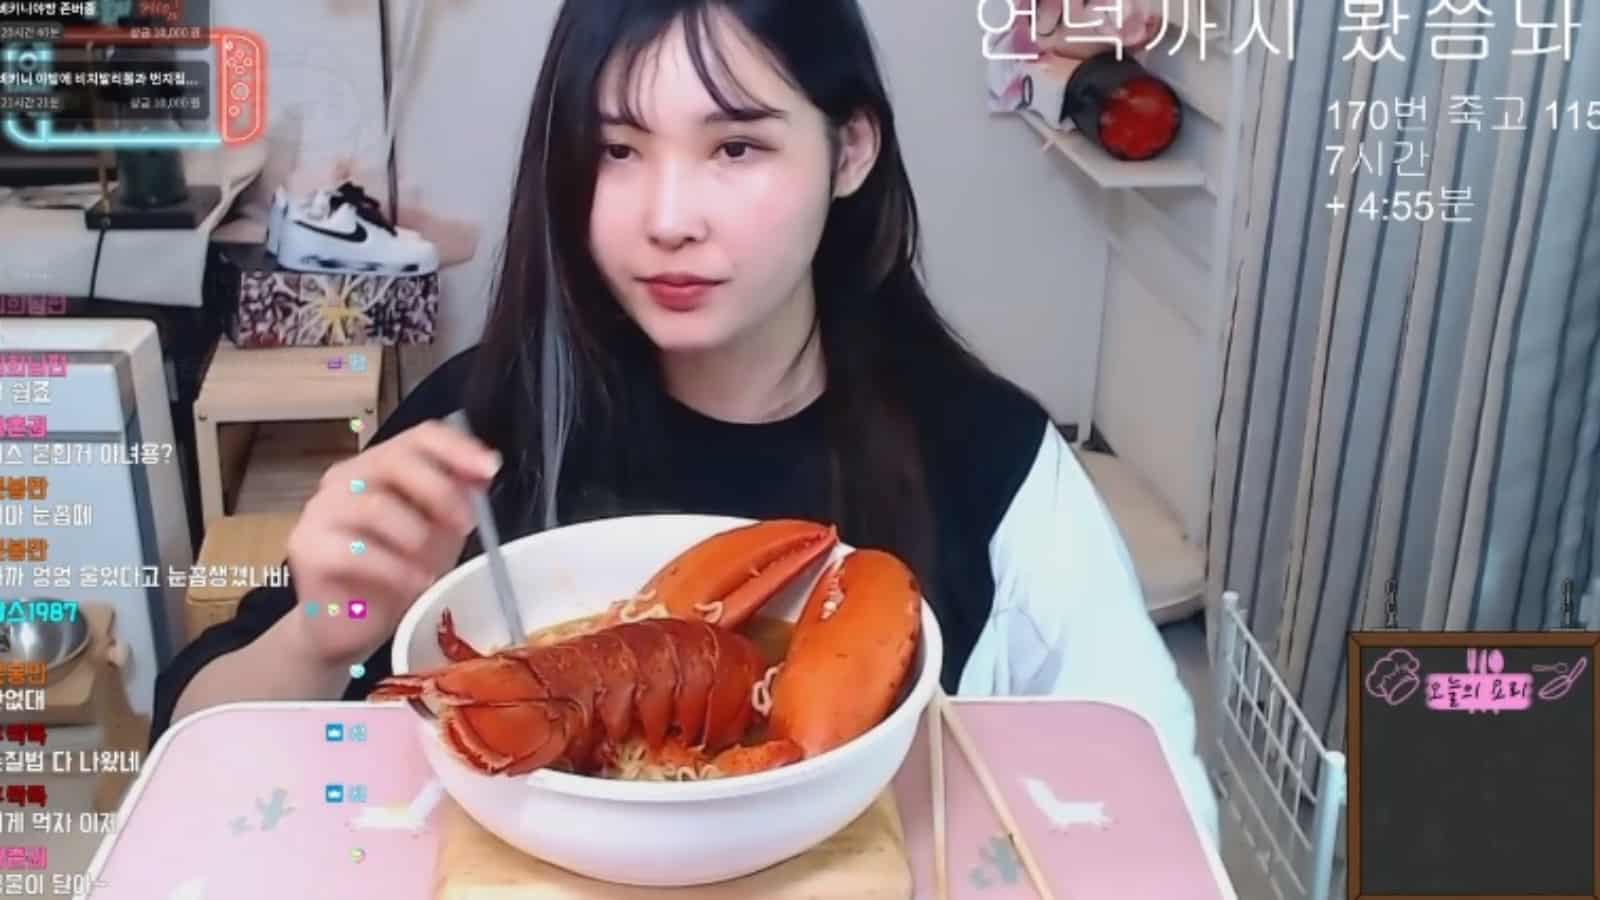 heehee1004 was afraid of a lobster